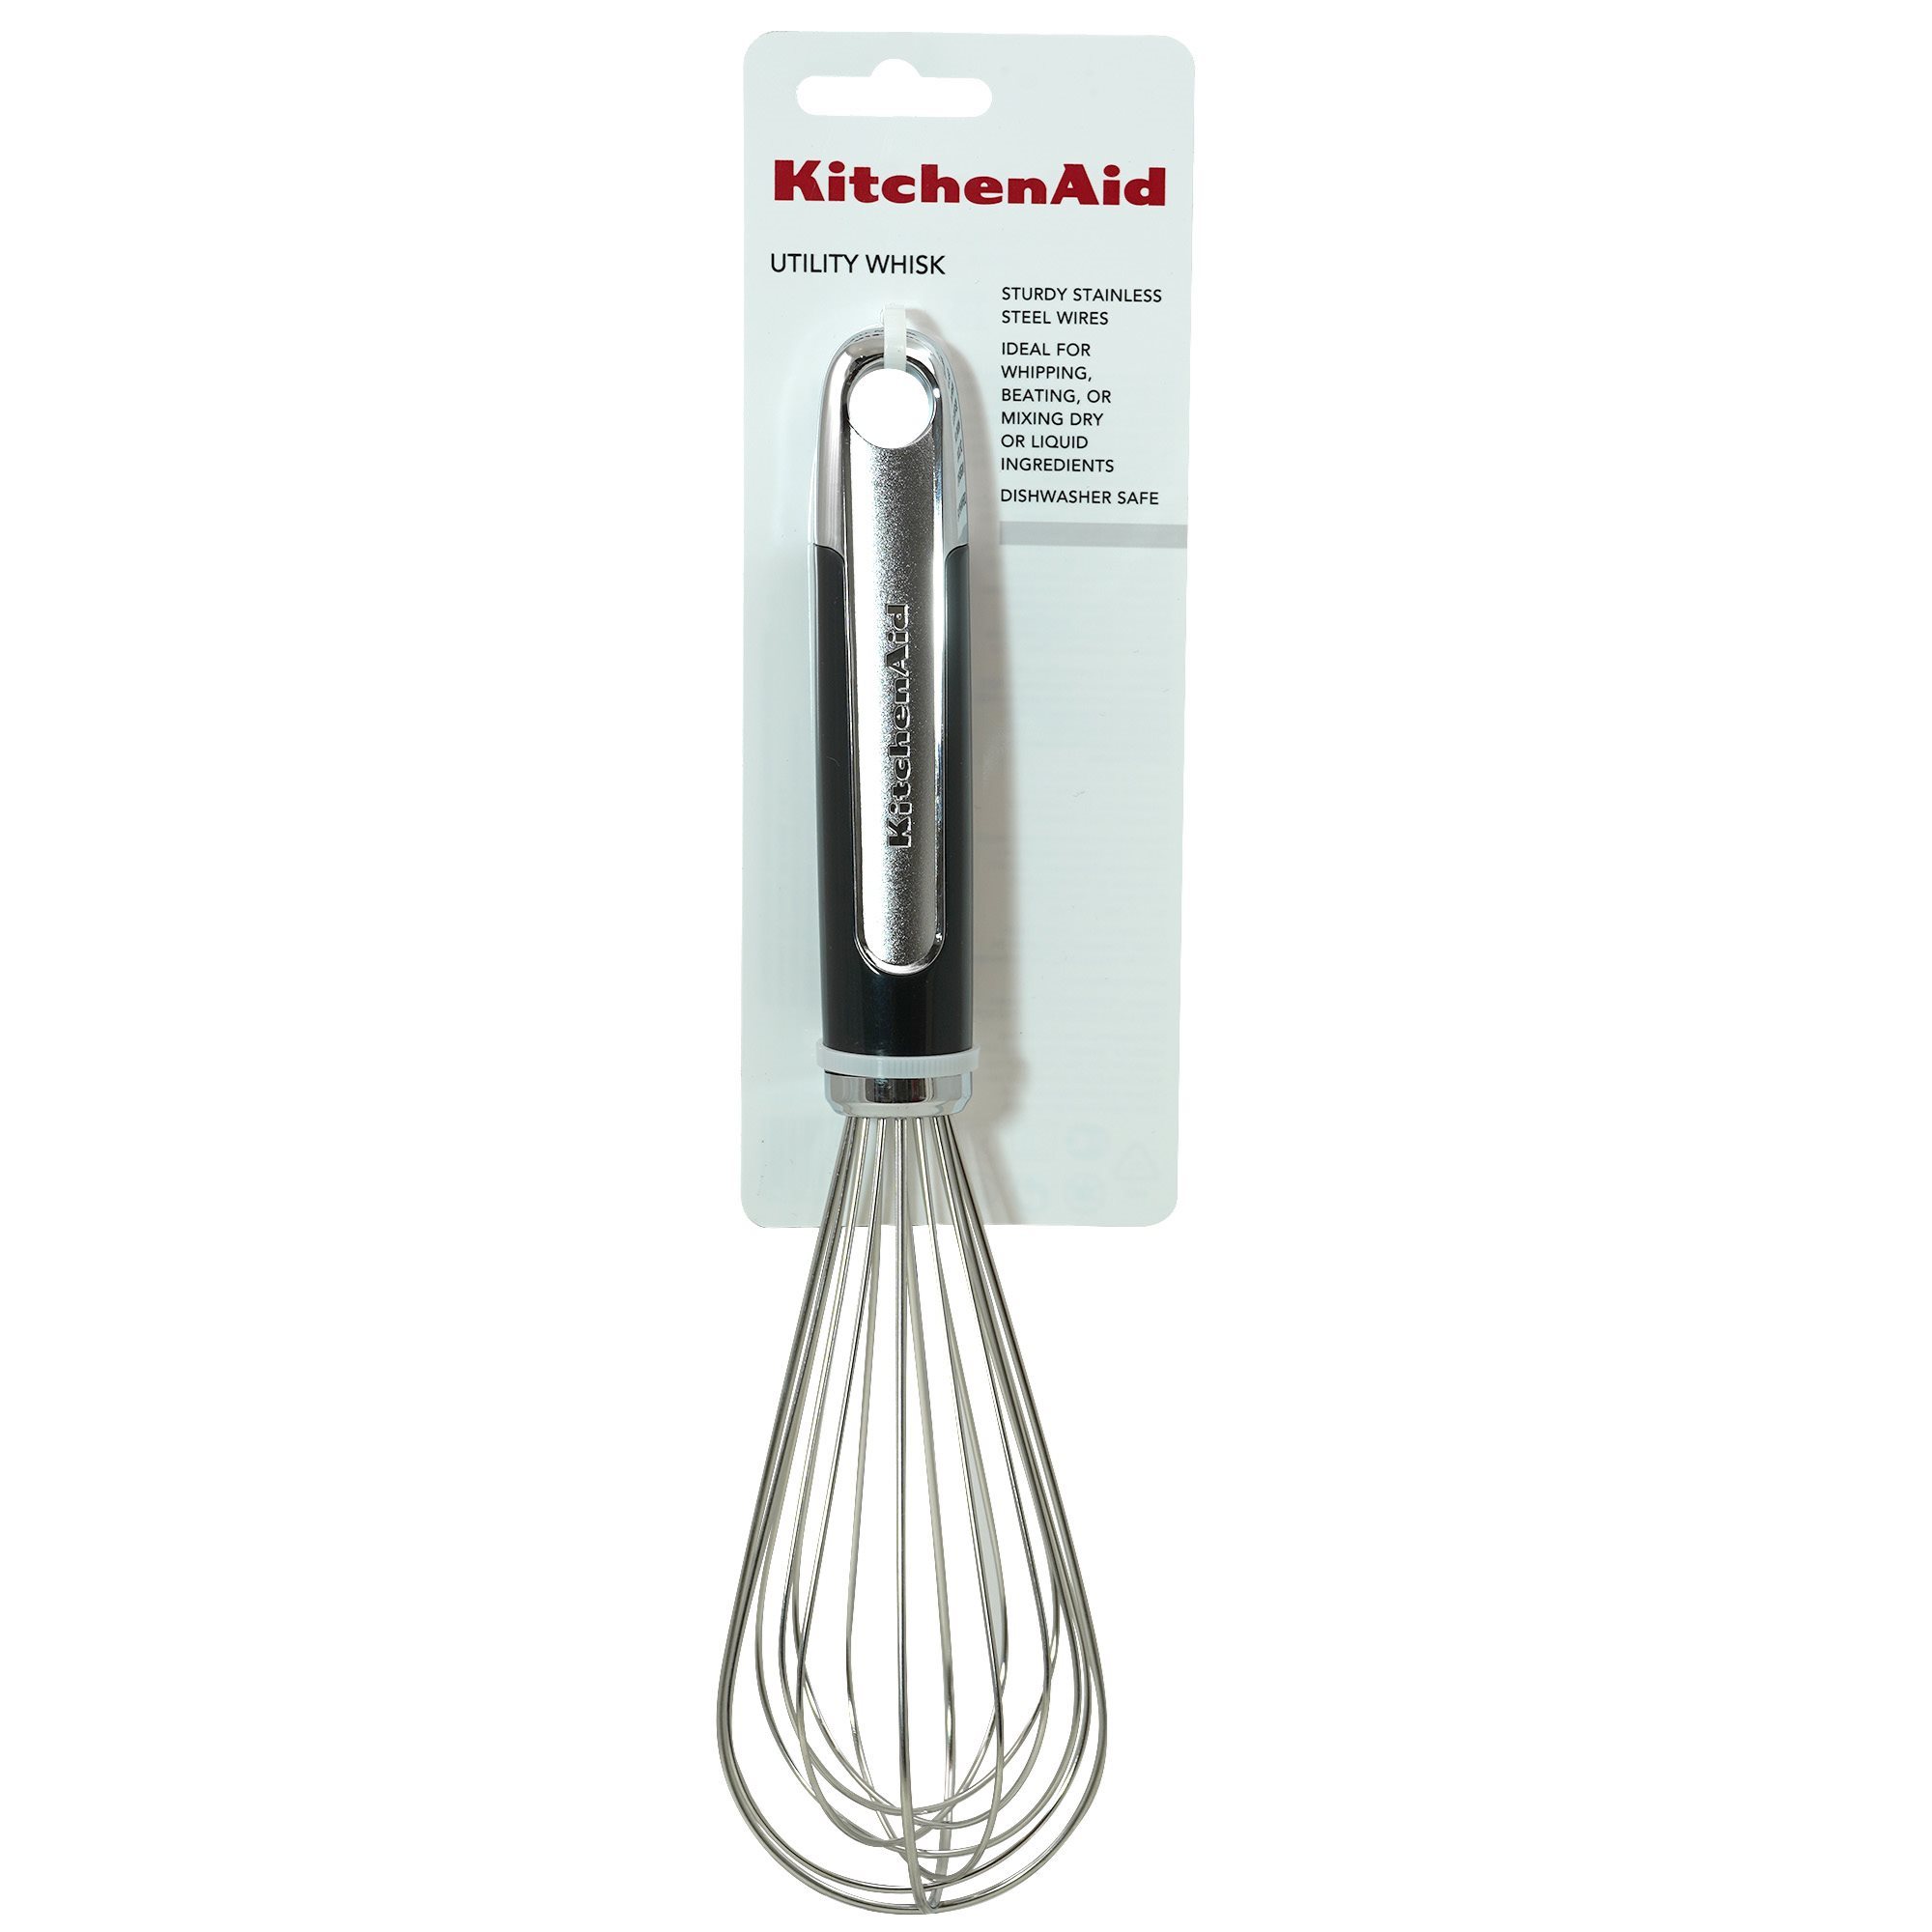 KitchenAid Stainless Steel Utility Whisk, Black Handle, Dishwasher Safe